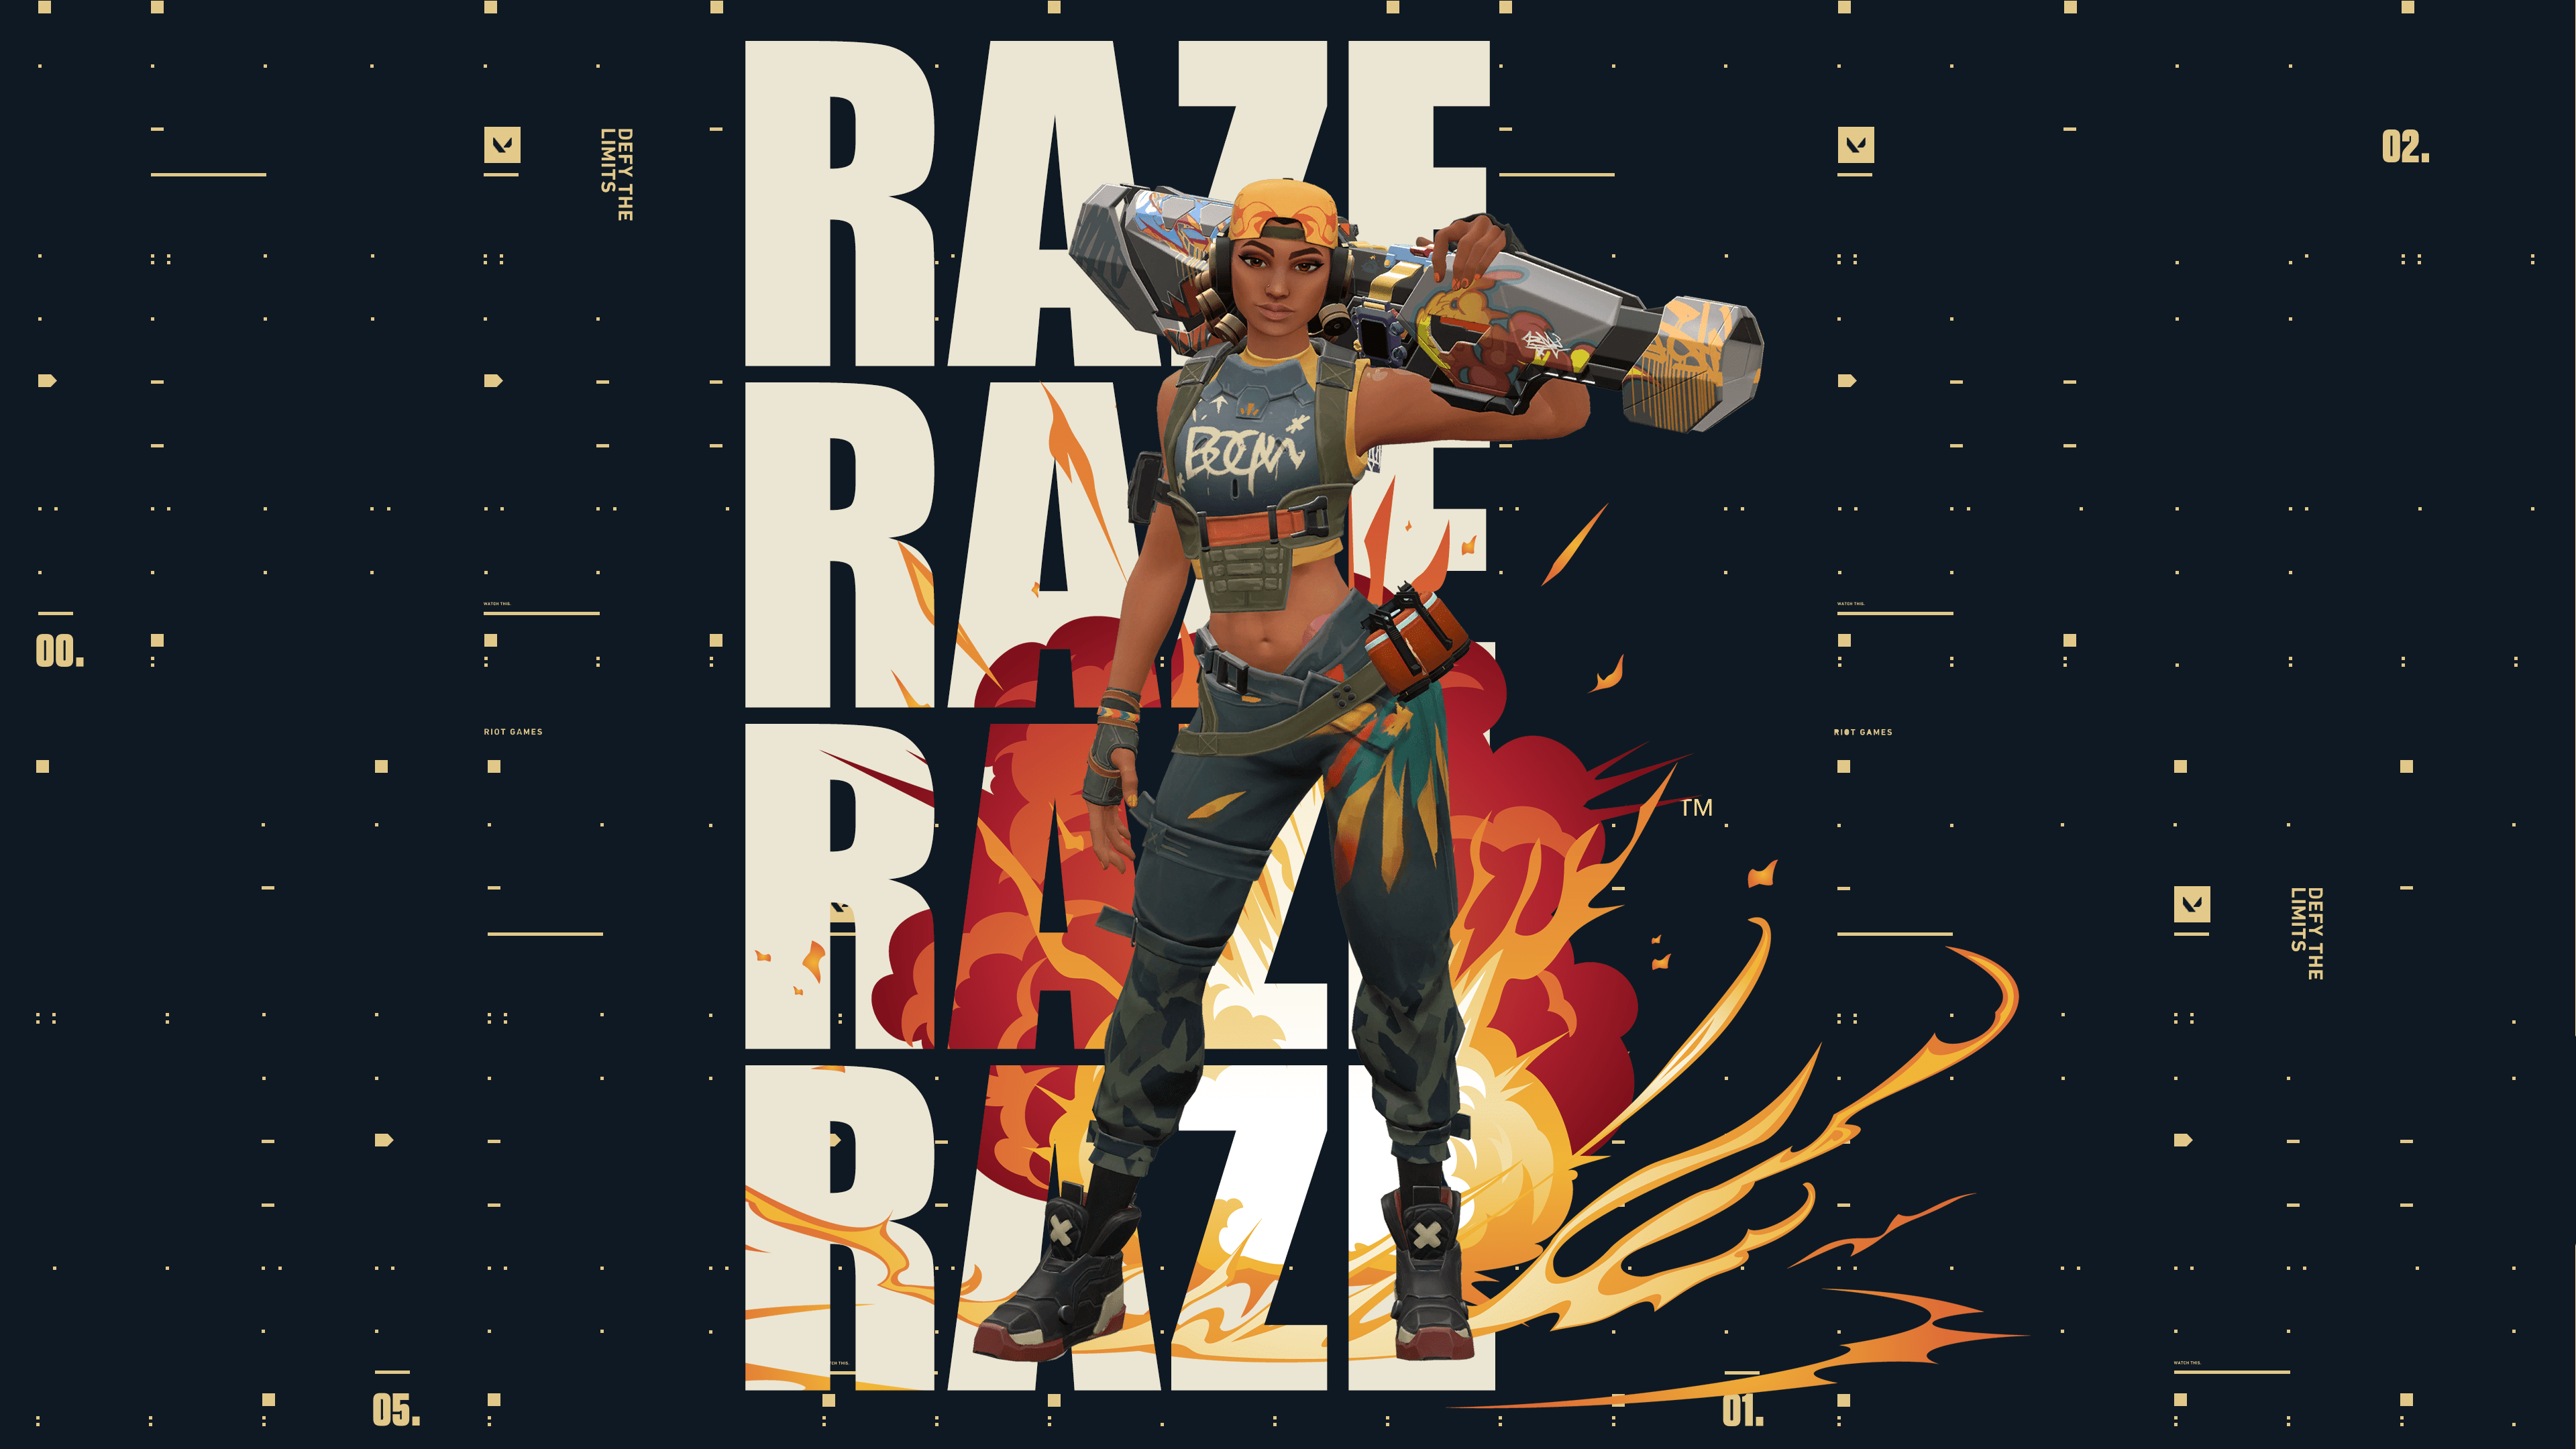 Ricardo Monteiro - Raze - Valorant Wallpaper